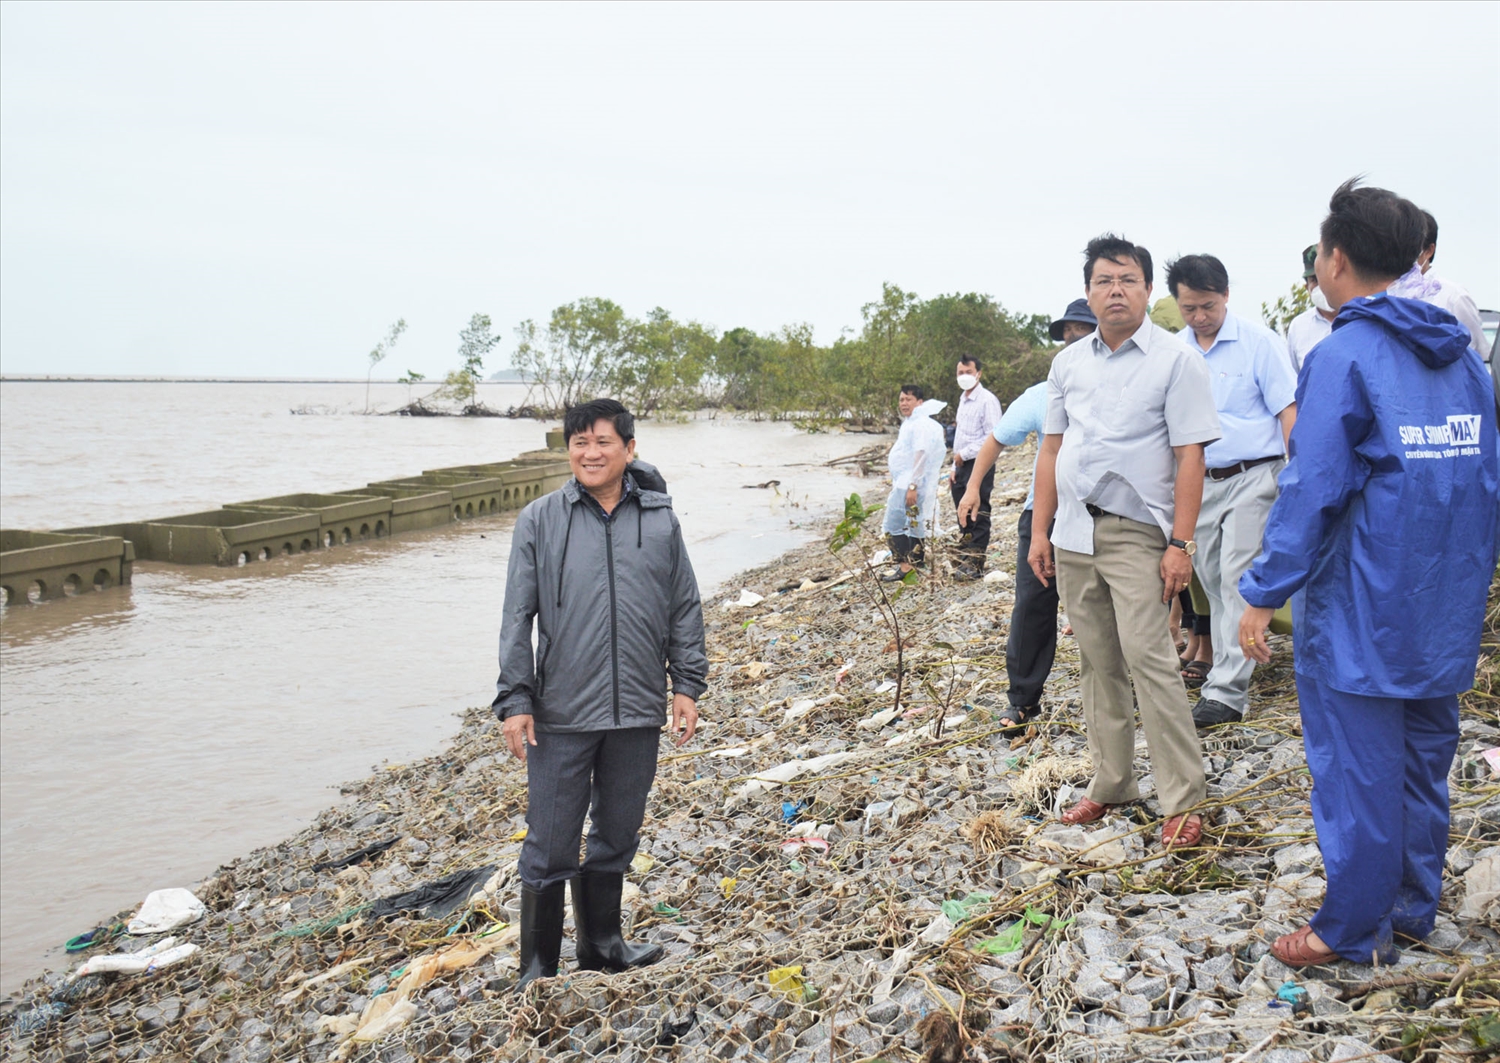 Bí thư Tỉnh ủy Cà Mau Nguyễn Tiến Hải (người đứng thứ 2 từ phải qua) đã đến kiểm tra, chỉ đạo trực tiếp khắc phục thiệt hại tại đê biển Tây